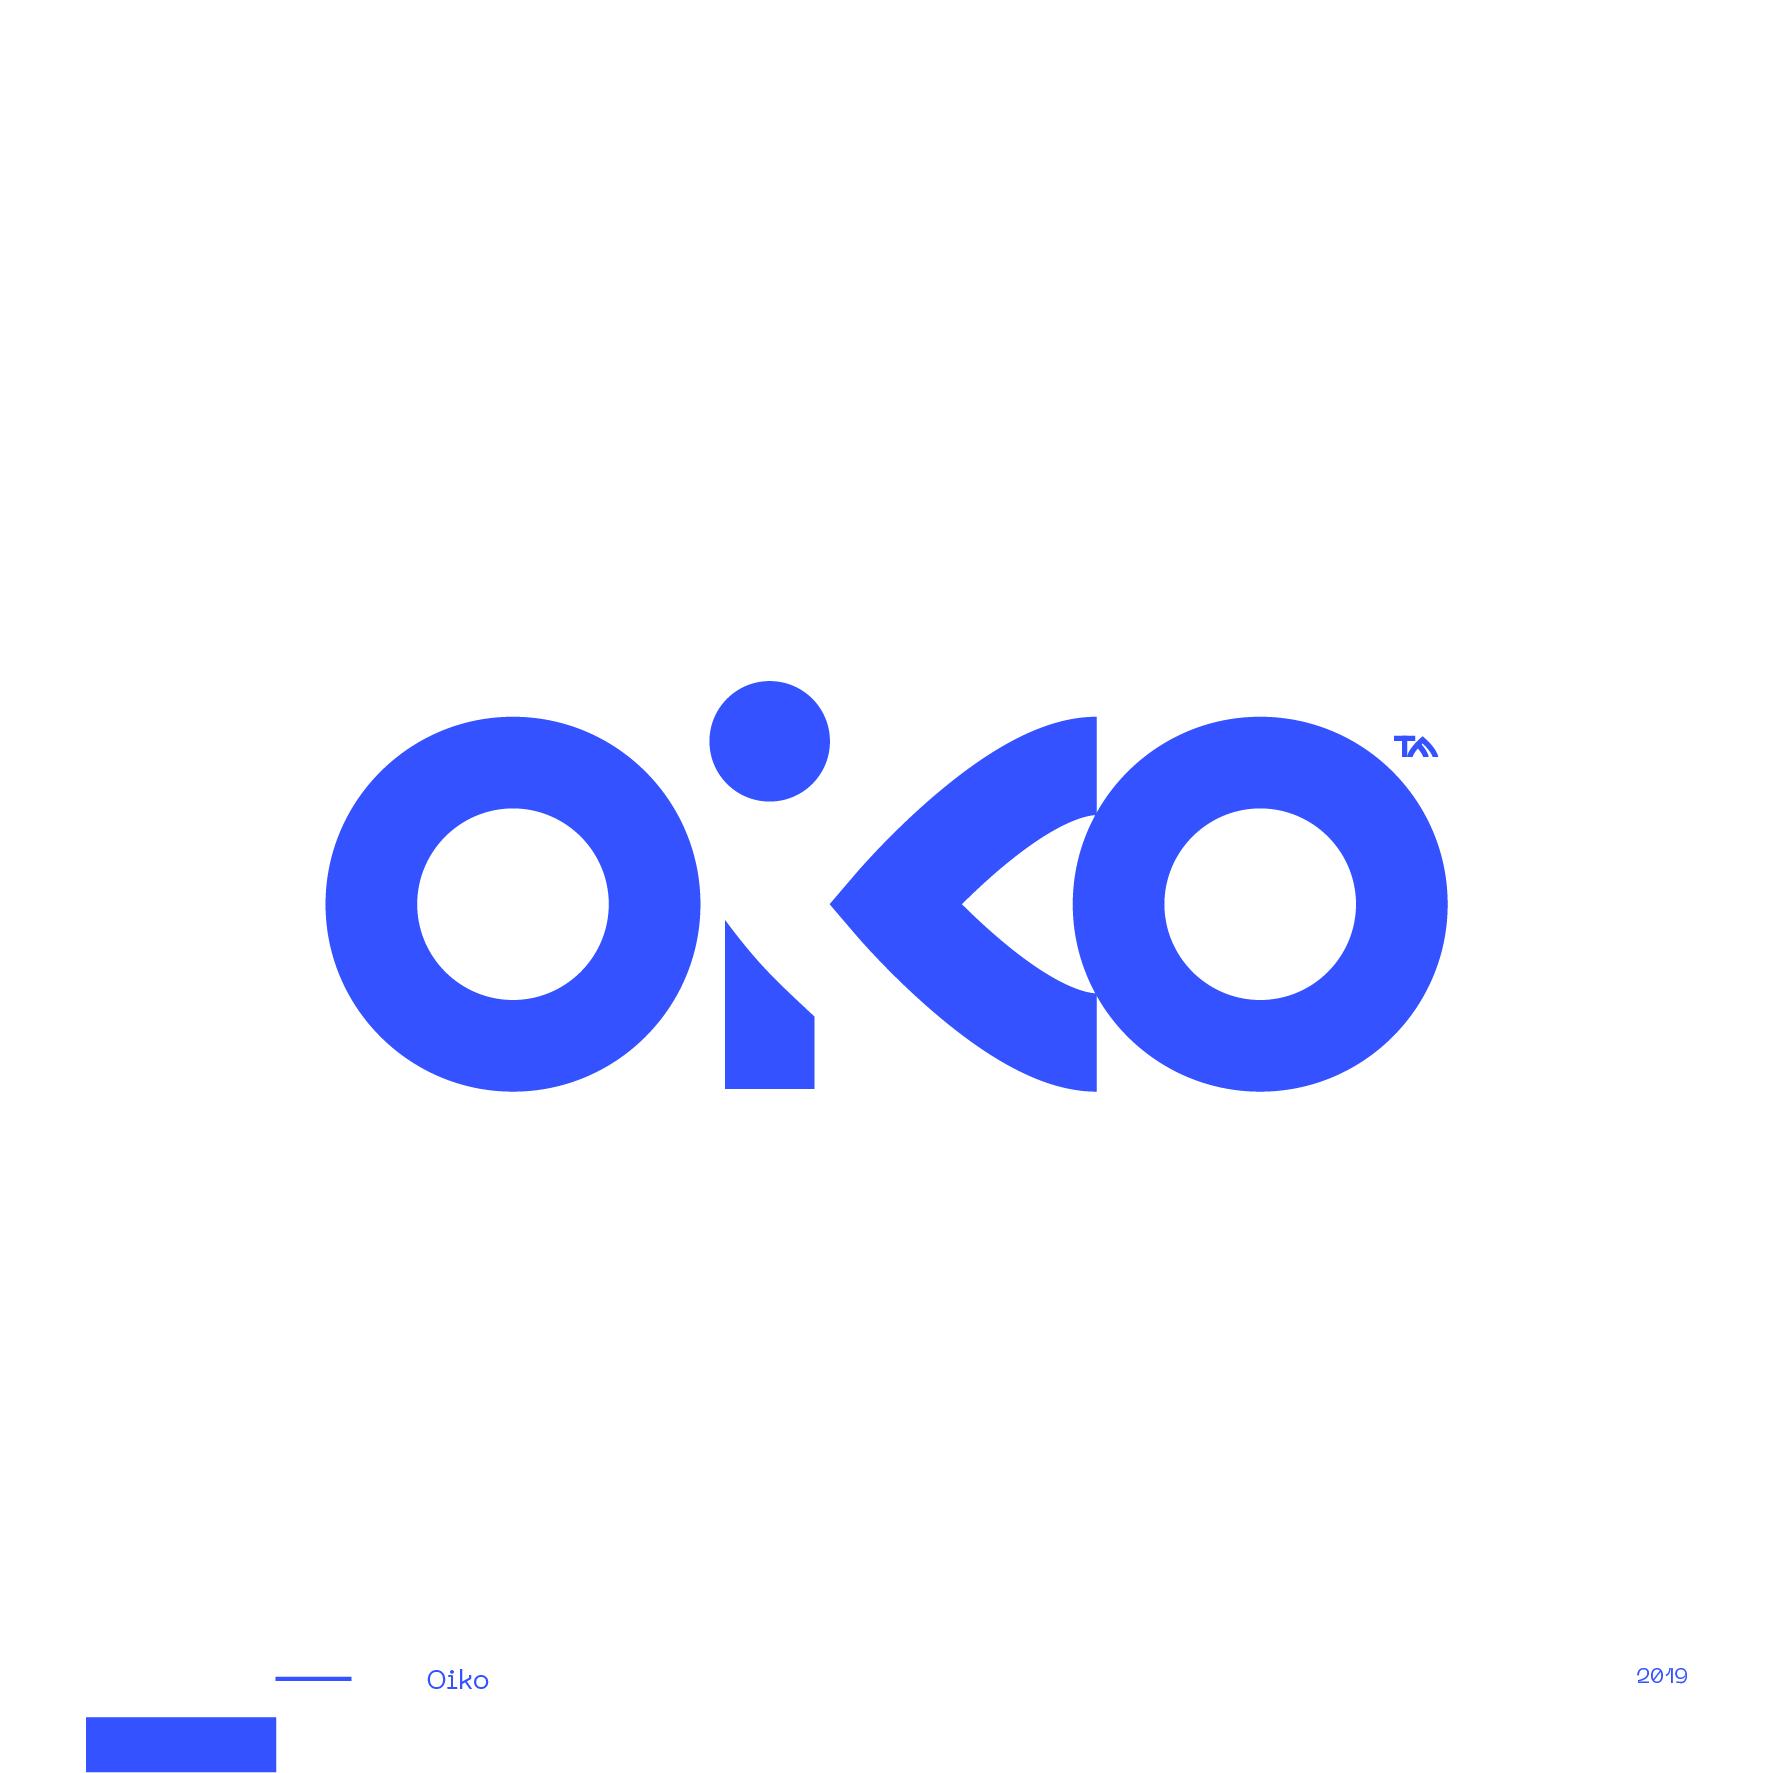 Guapo_Design_Studio_Logotype_Collection_Oiko